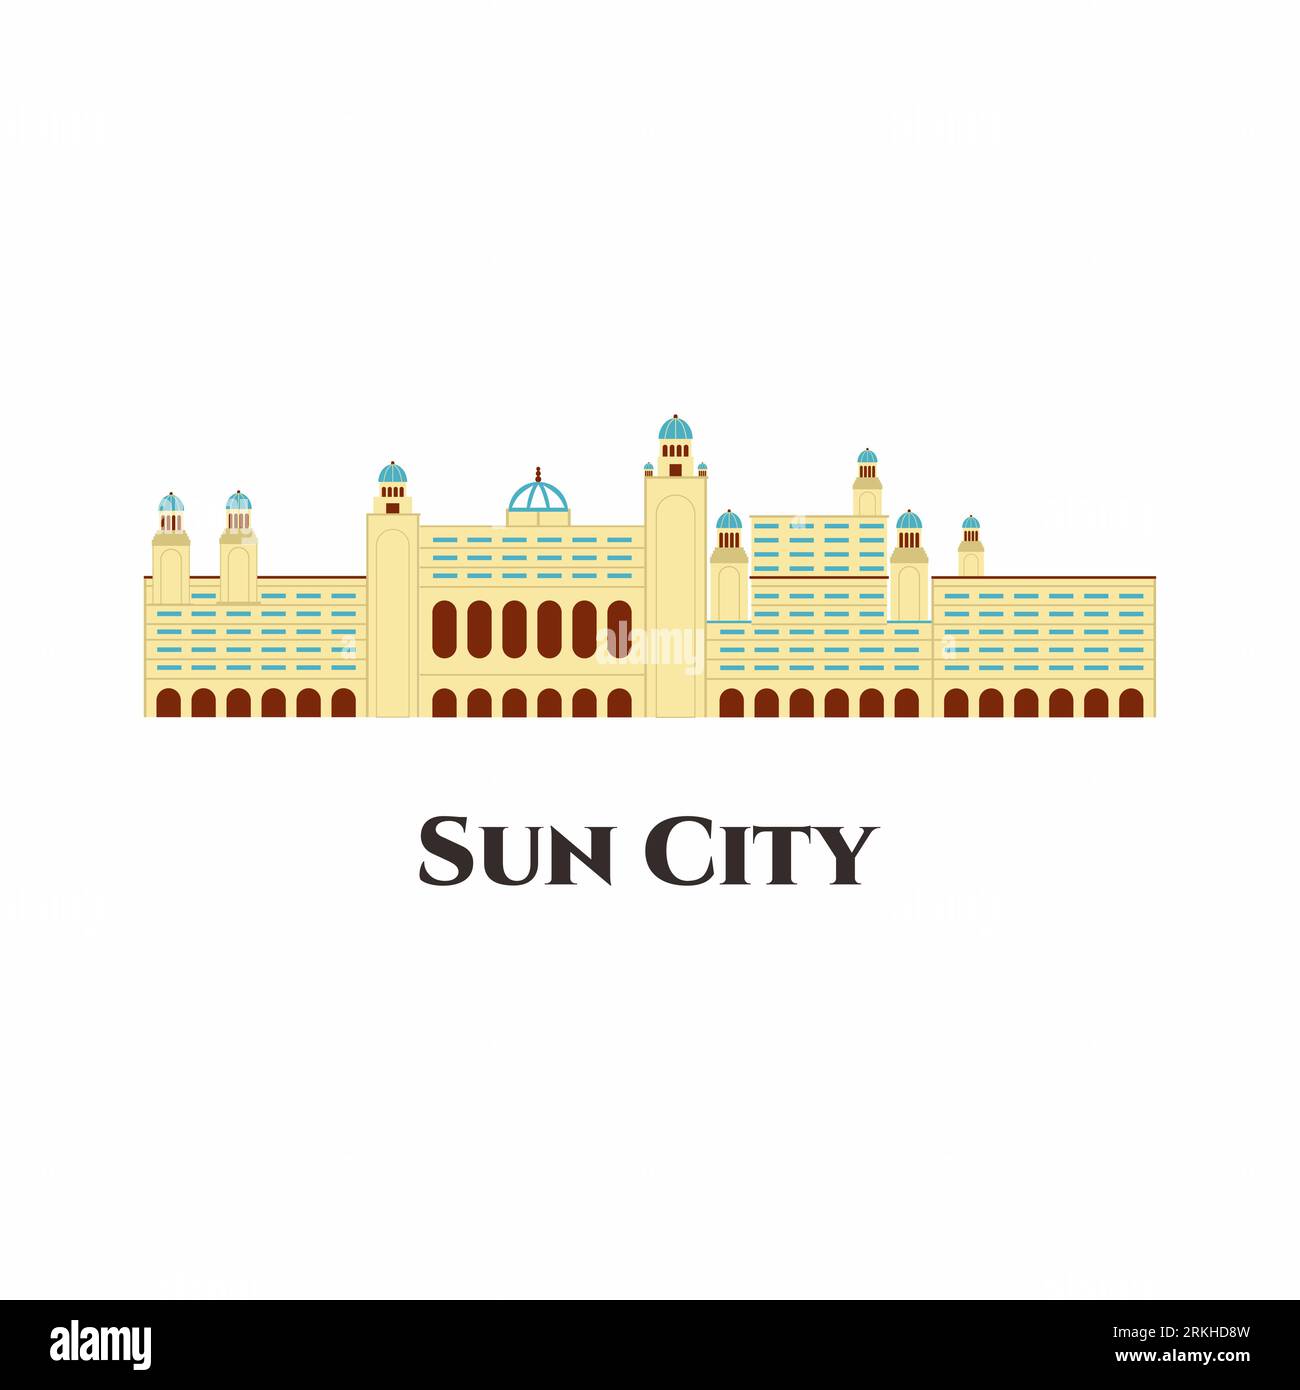 Sun City Resort in Südafrika Vektorsymbol flach Cartoon. Es ist ein erstklassiges Reiseziel mit einer Vielzahl von Hotels, Attraktionen und Aktivitäten für Kinder. Tolles Hotel Stock Vektor